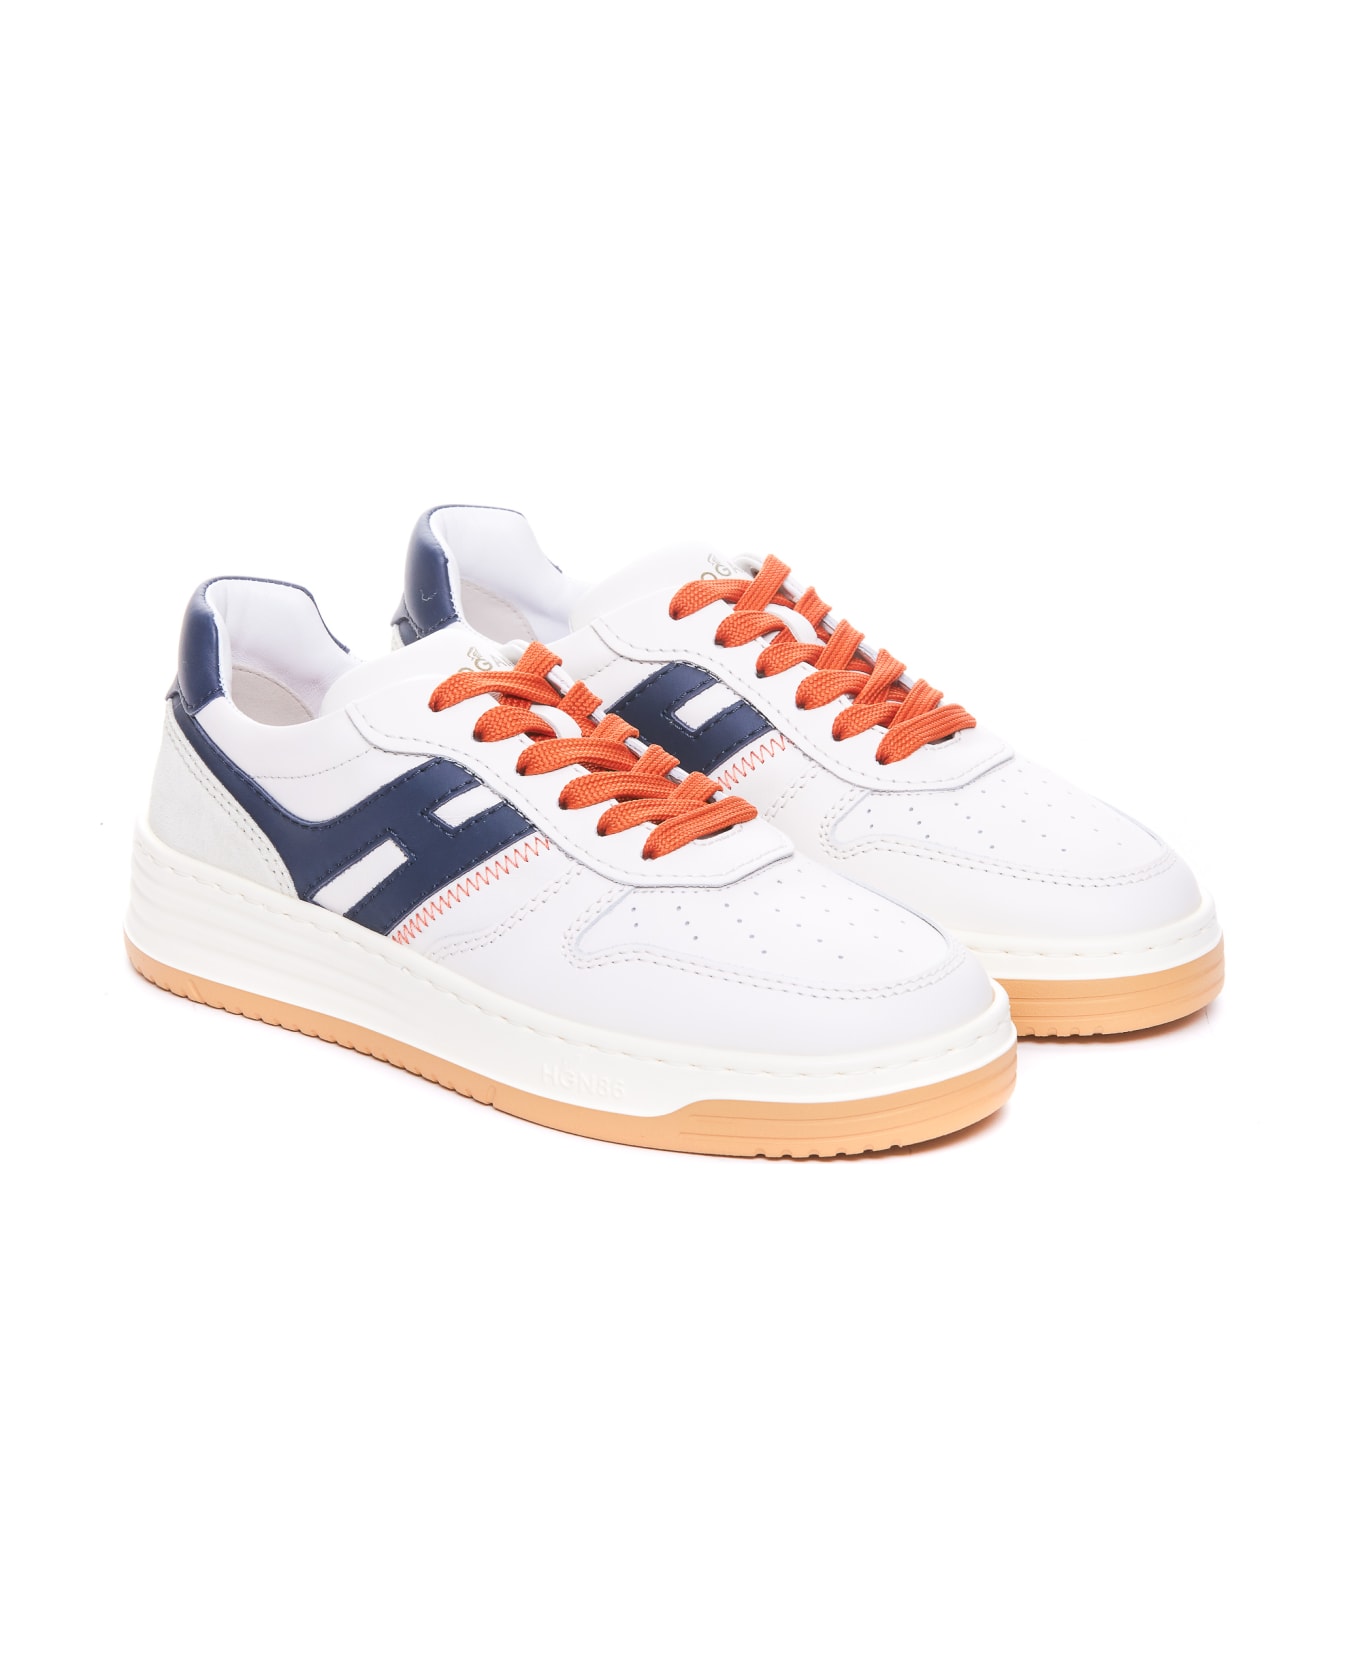 Hogan H630 Sneakers - White スニーカー